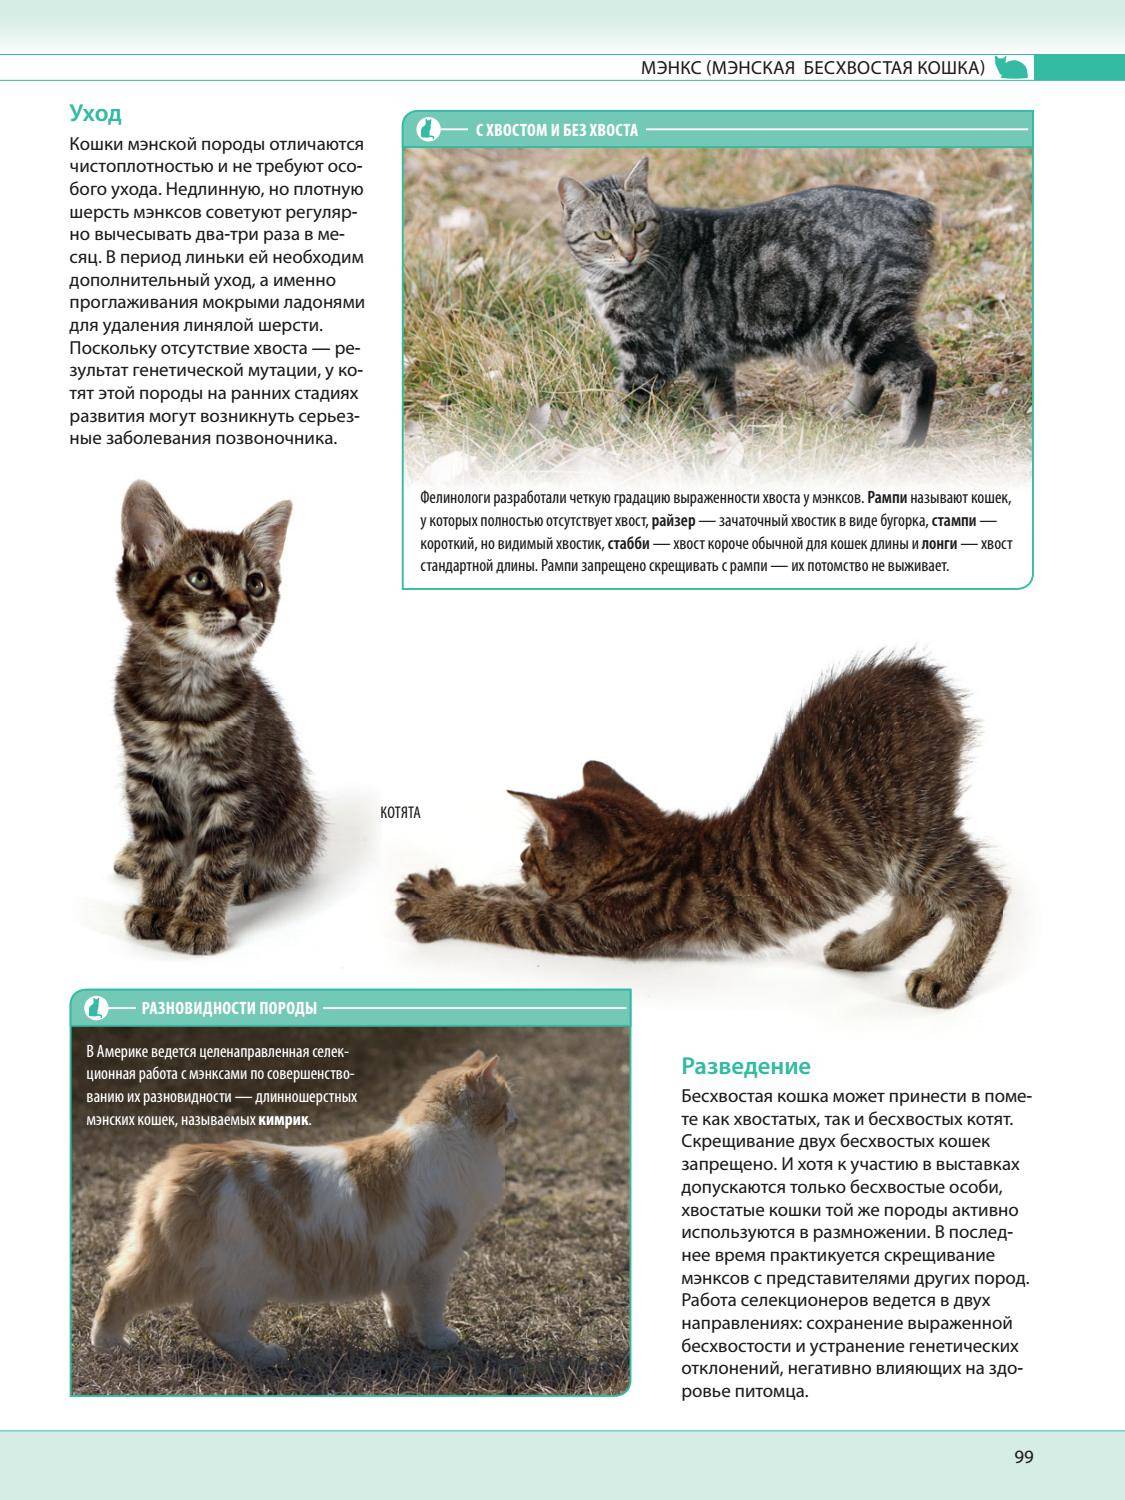 Виды окрасов сибирских кошек: голубая, черная, рыжая, колорпоинт и другие